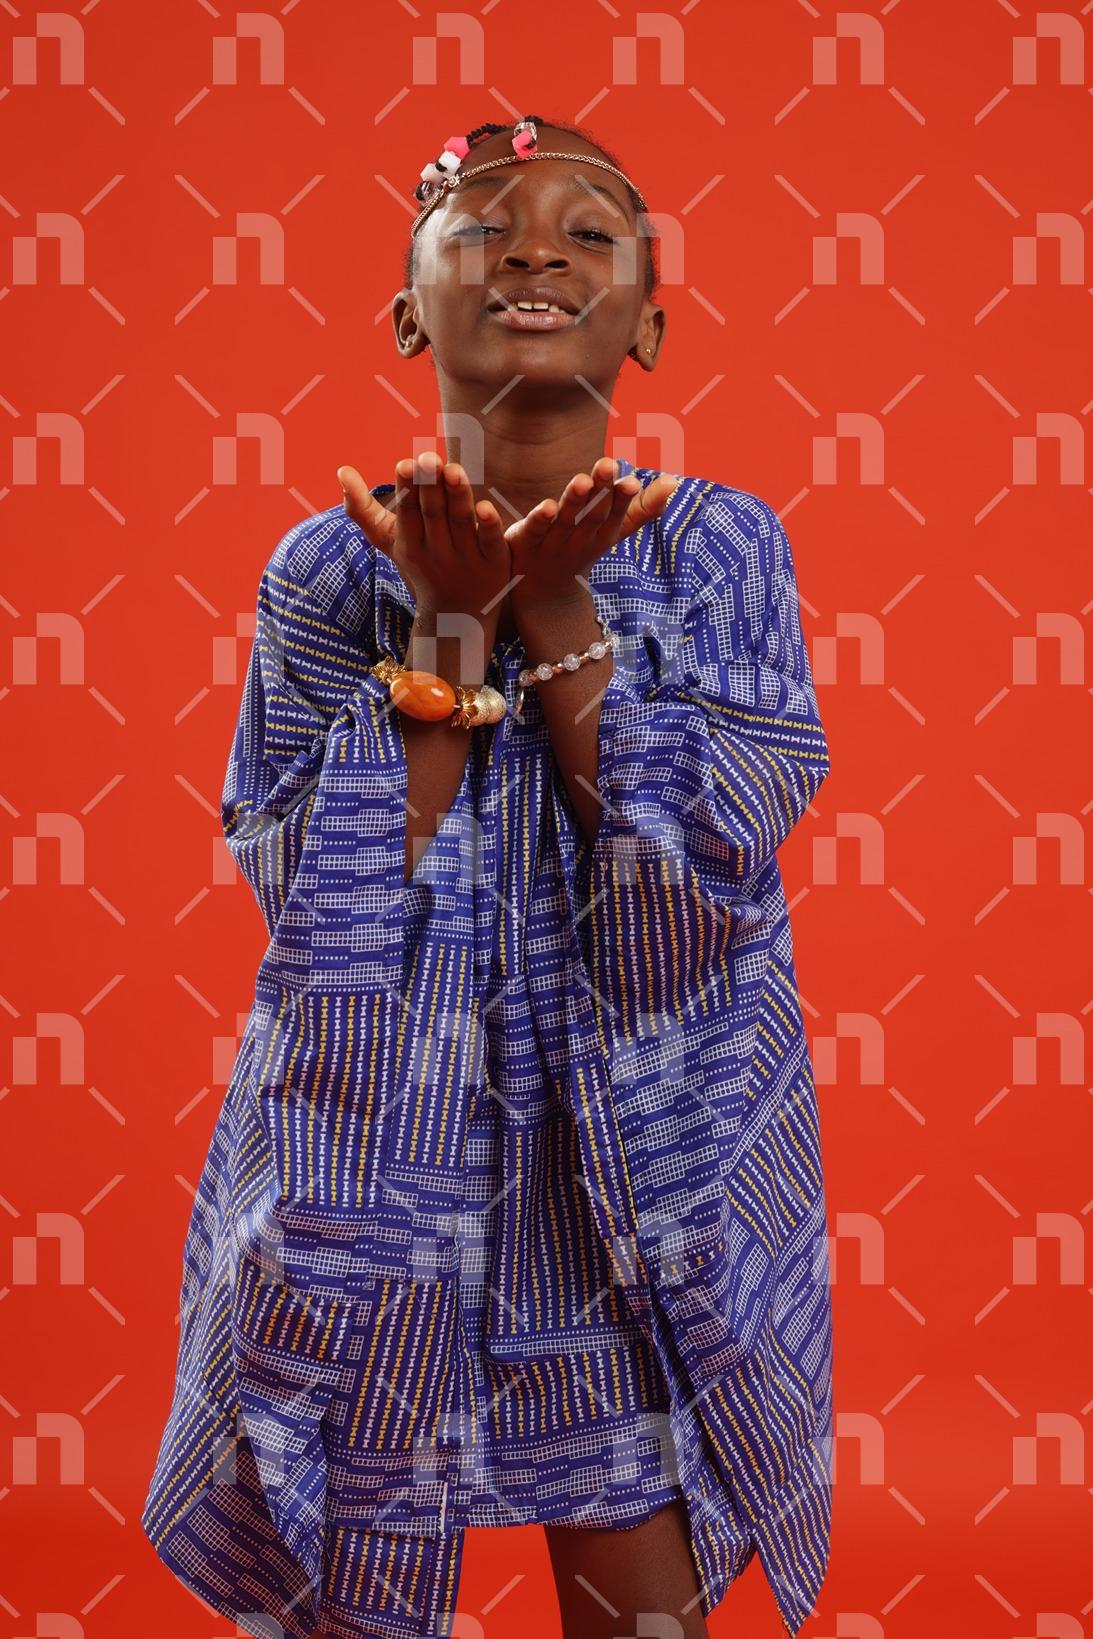 fillette-africaine-moderne-vetue-dune-robe-de-couleur-bleu-ayant-les-deux-mains-jointes-avec-les-paumes-en-direction-du-ciel-accompagnees-dun-grand-sourire-pour-une-photo-studio